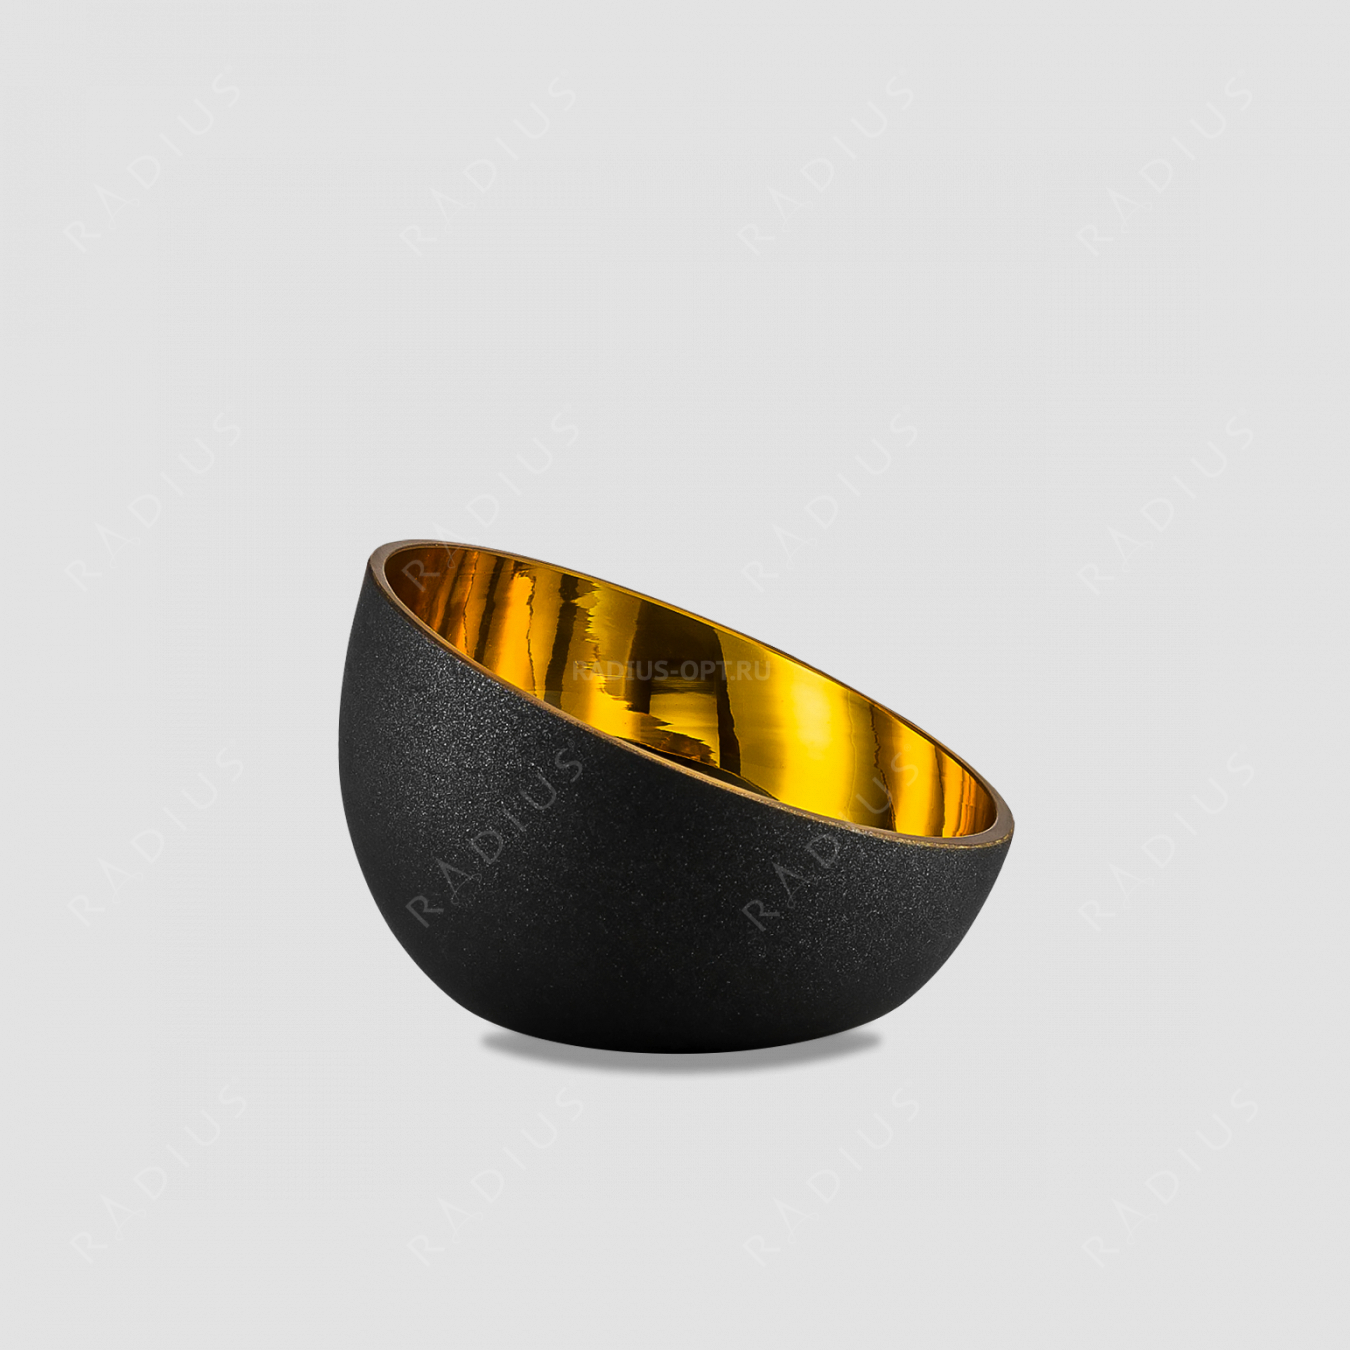 Чаша глубокая Gold, диаметр: 12 см, материал: бессвинцовый хрусталь, цвет: черный/золото, серия Cosmo, EISCH, Германия